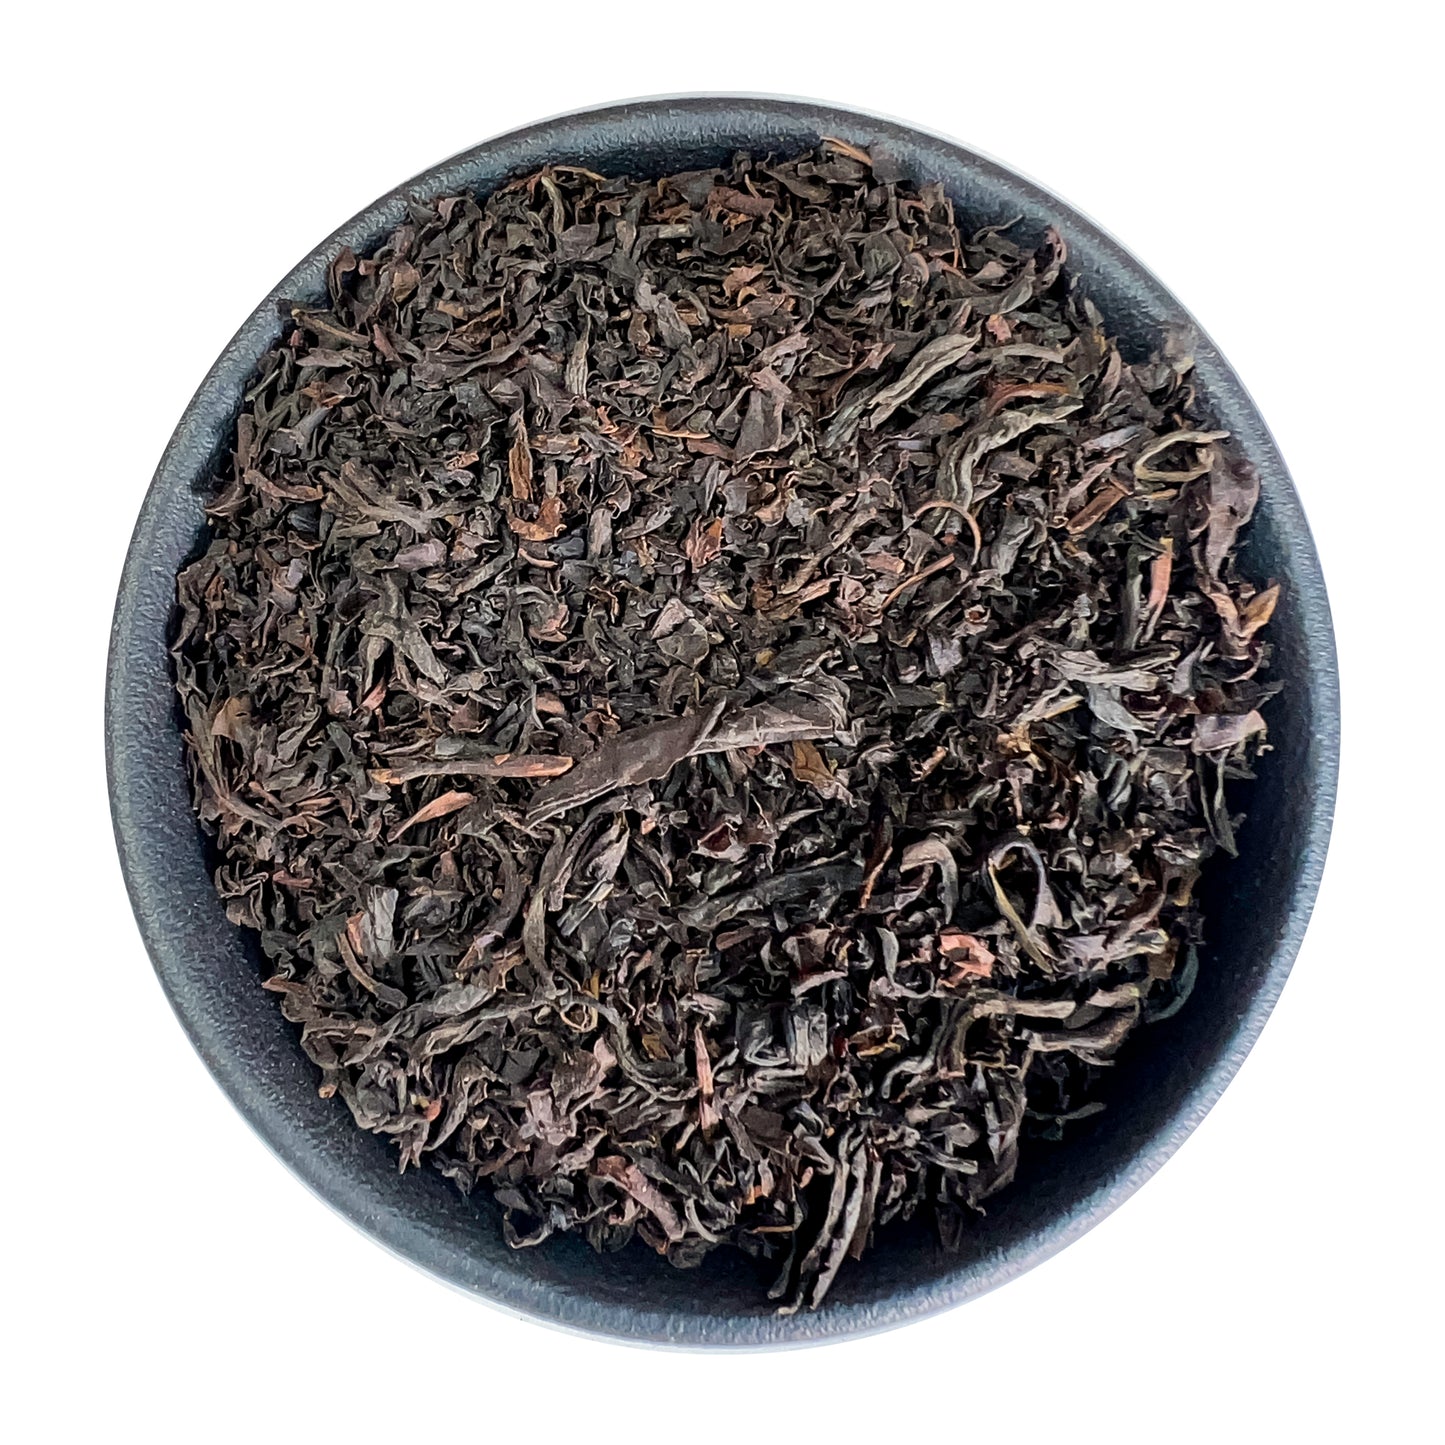 Smoky Earl Grey Loose Leaf Tea